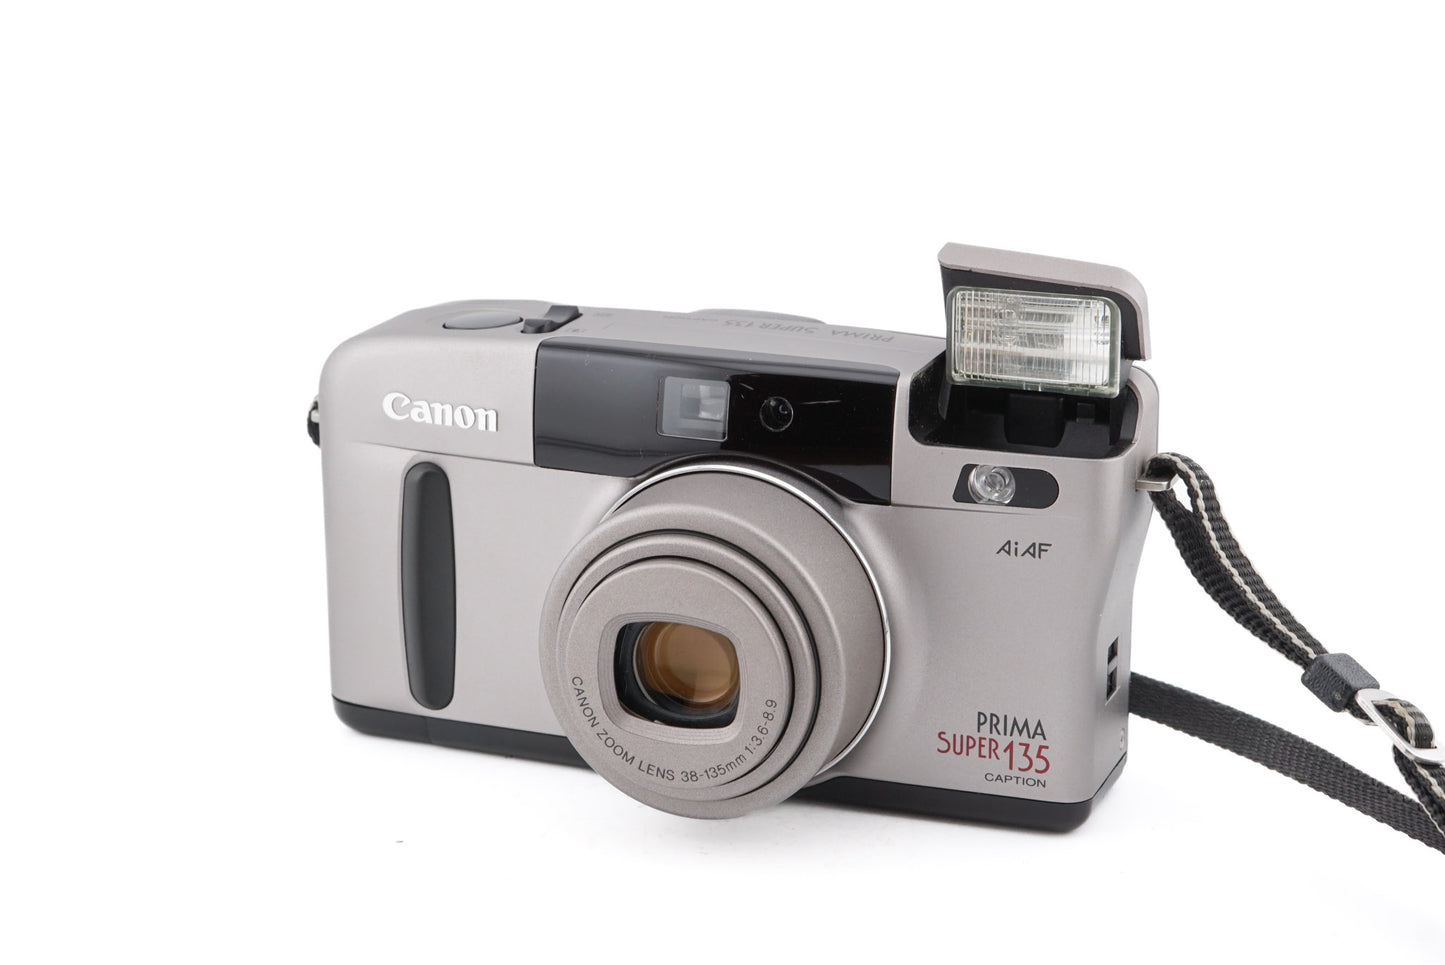 Canon Prima Super 135 Caption - Camera